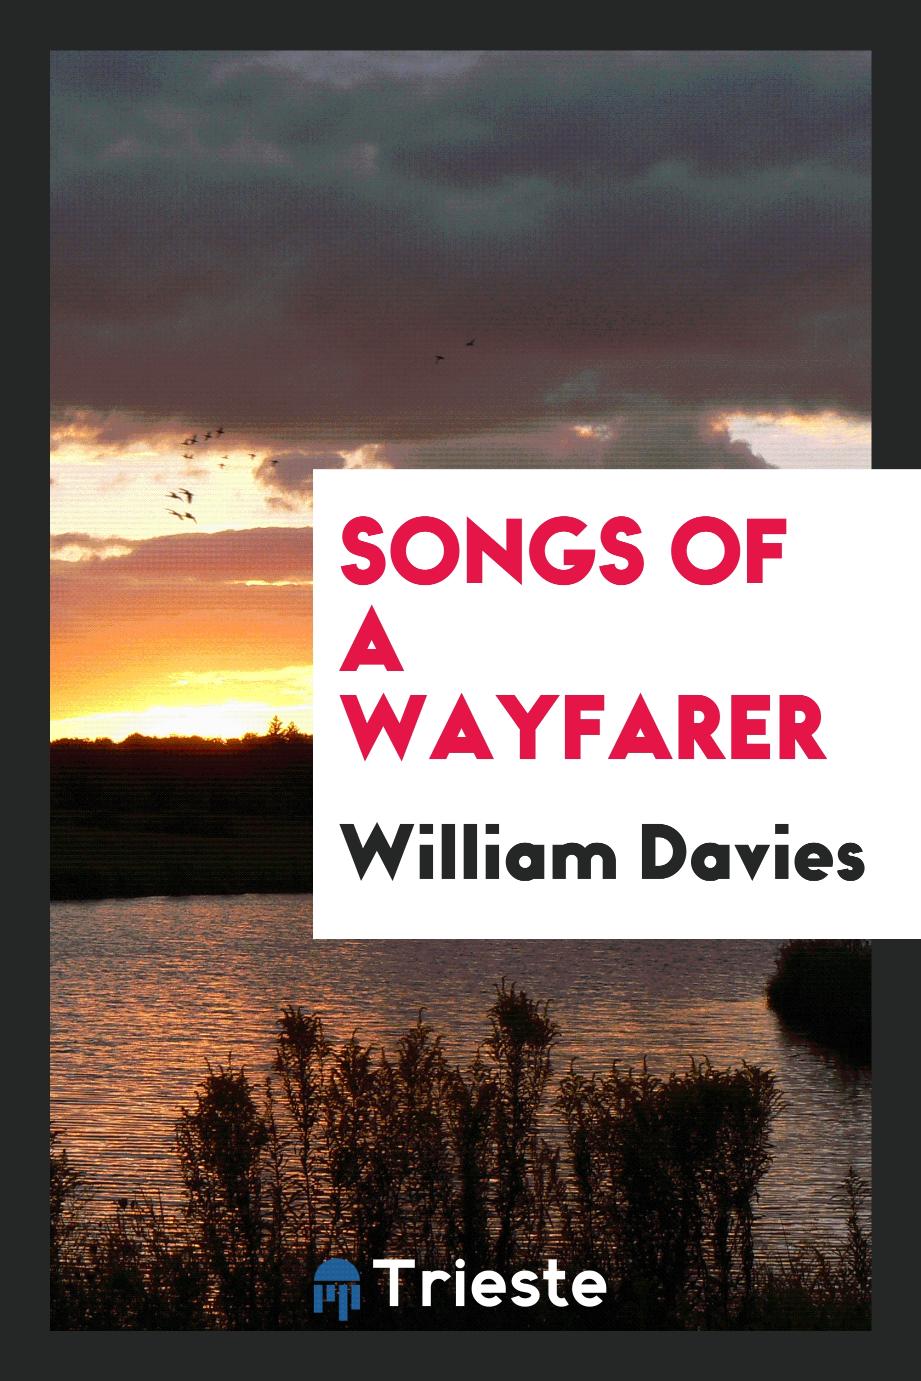 Songs of a wayfarer